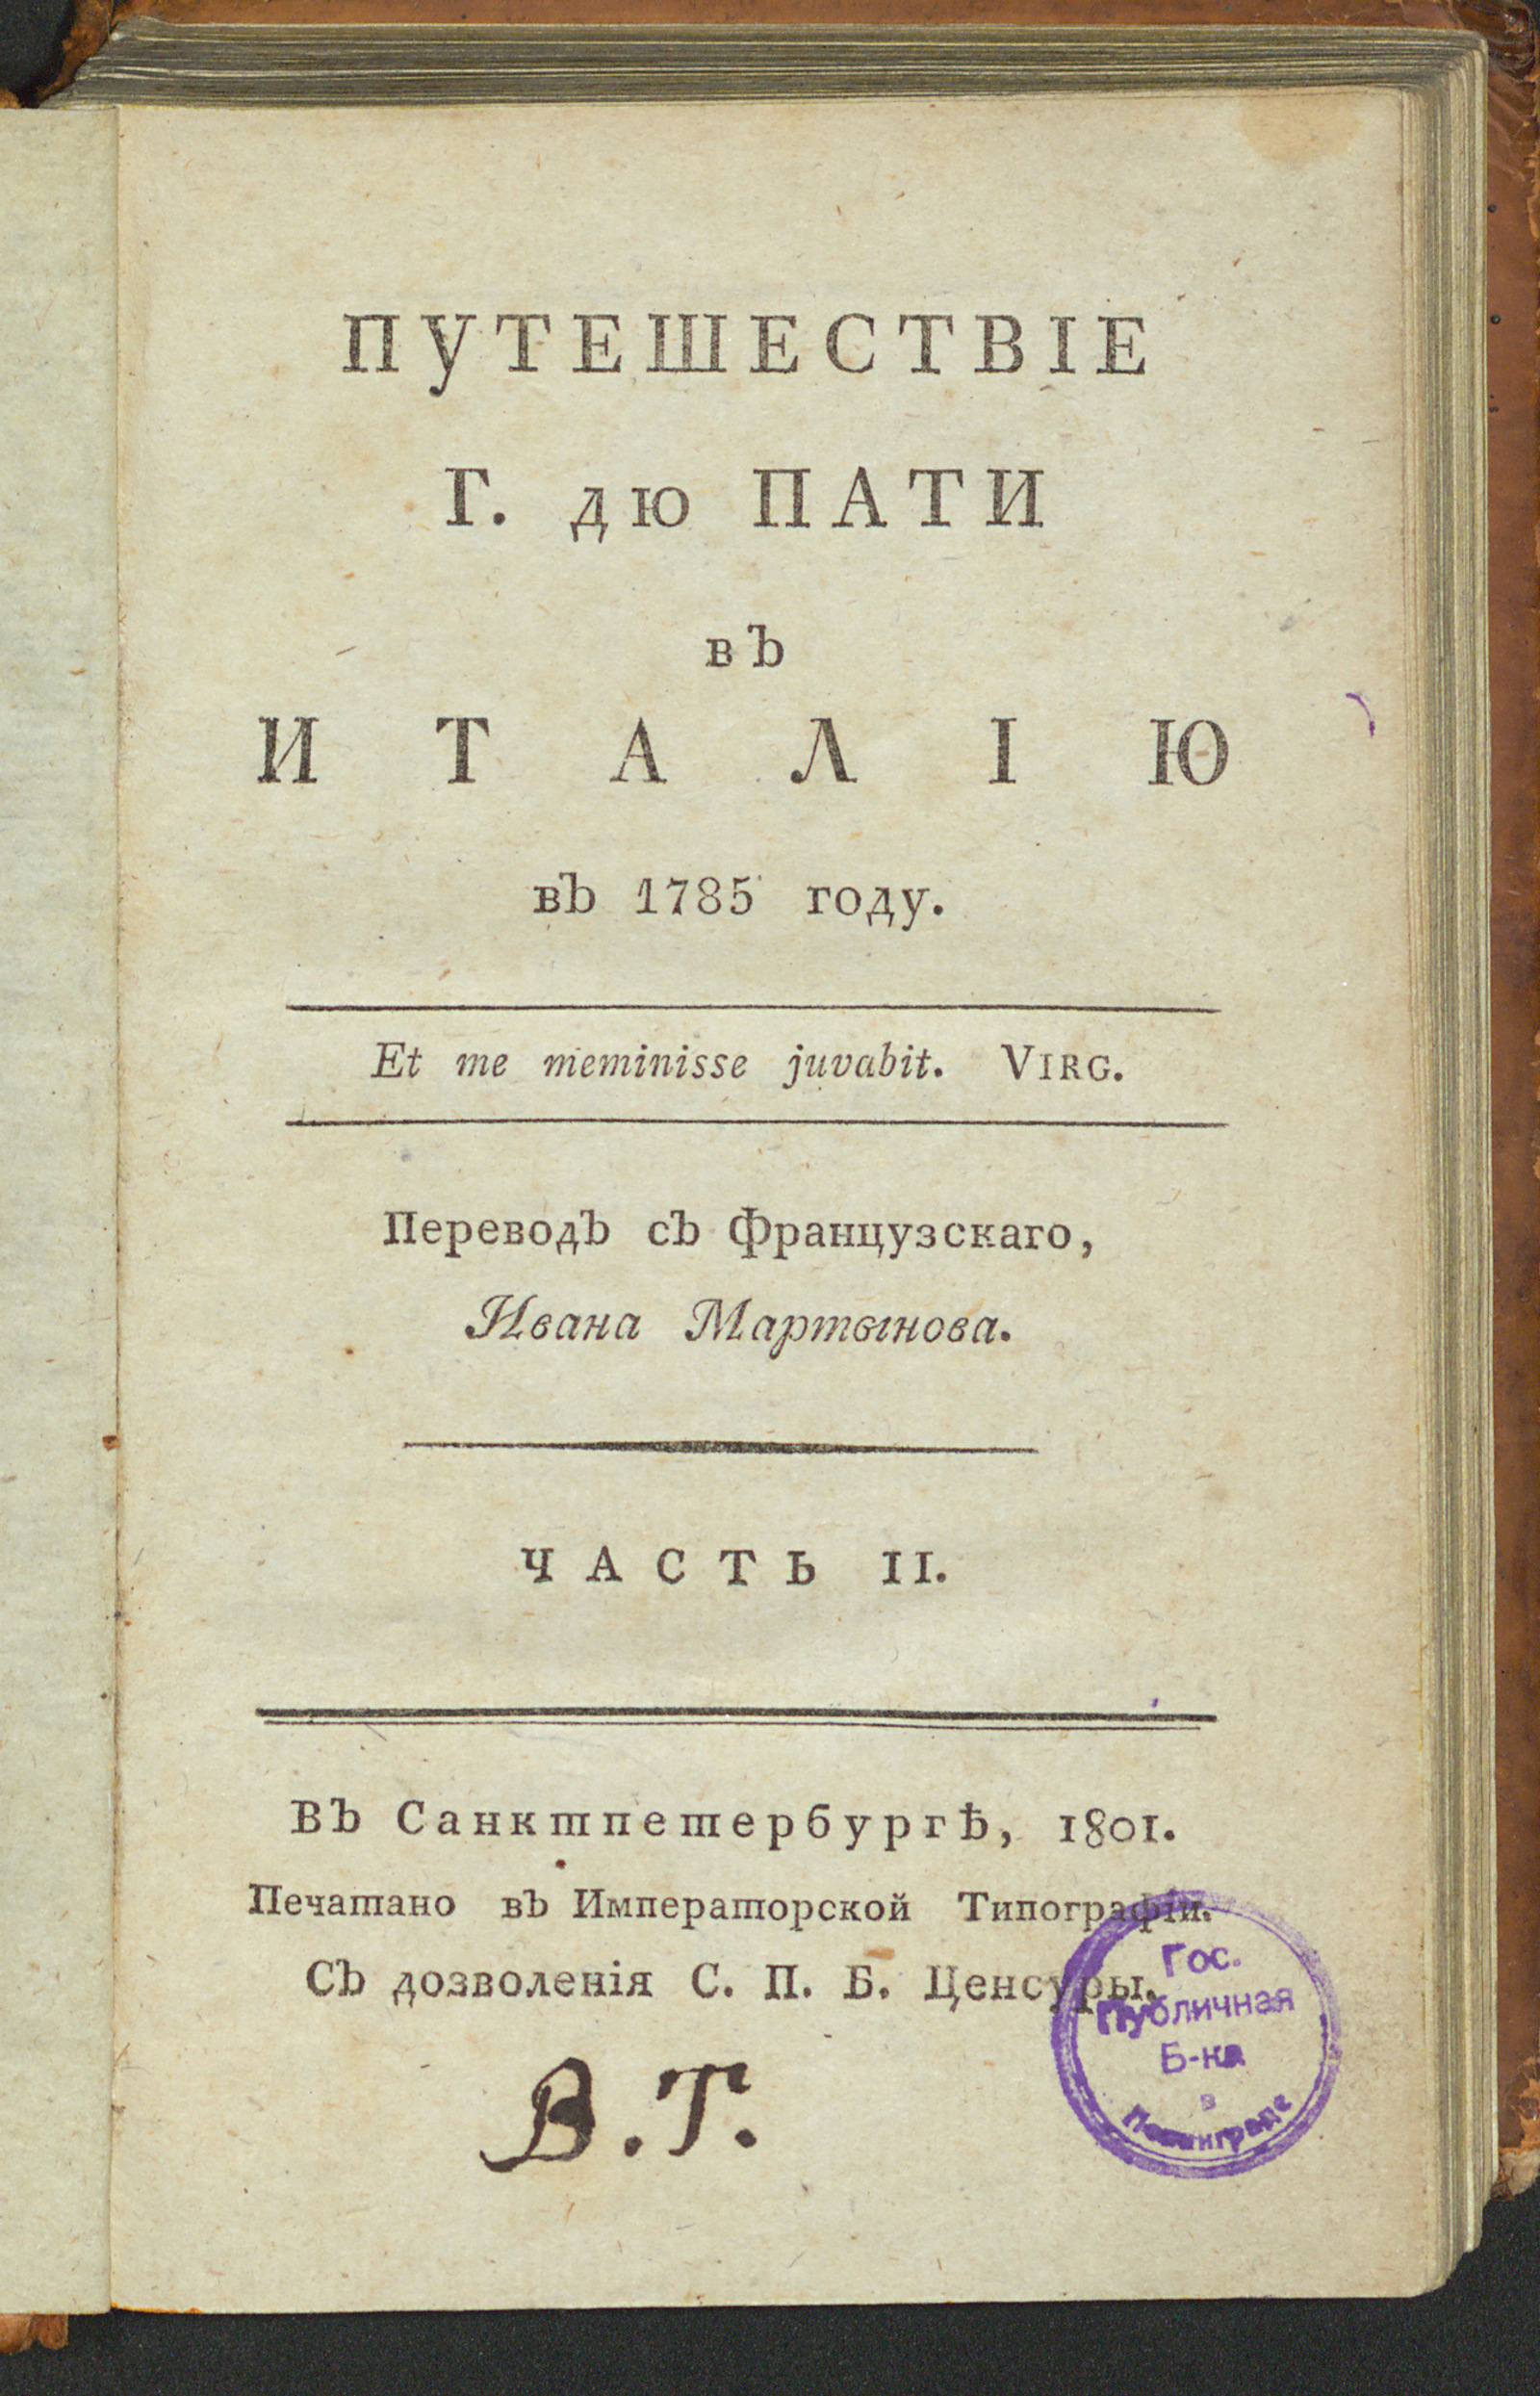 Изображение Путешествие г. Дю Пати в Италию в 1785 году. Ч. 2